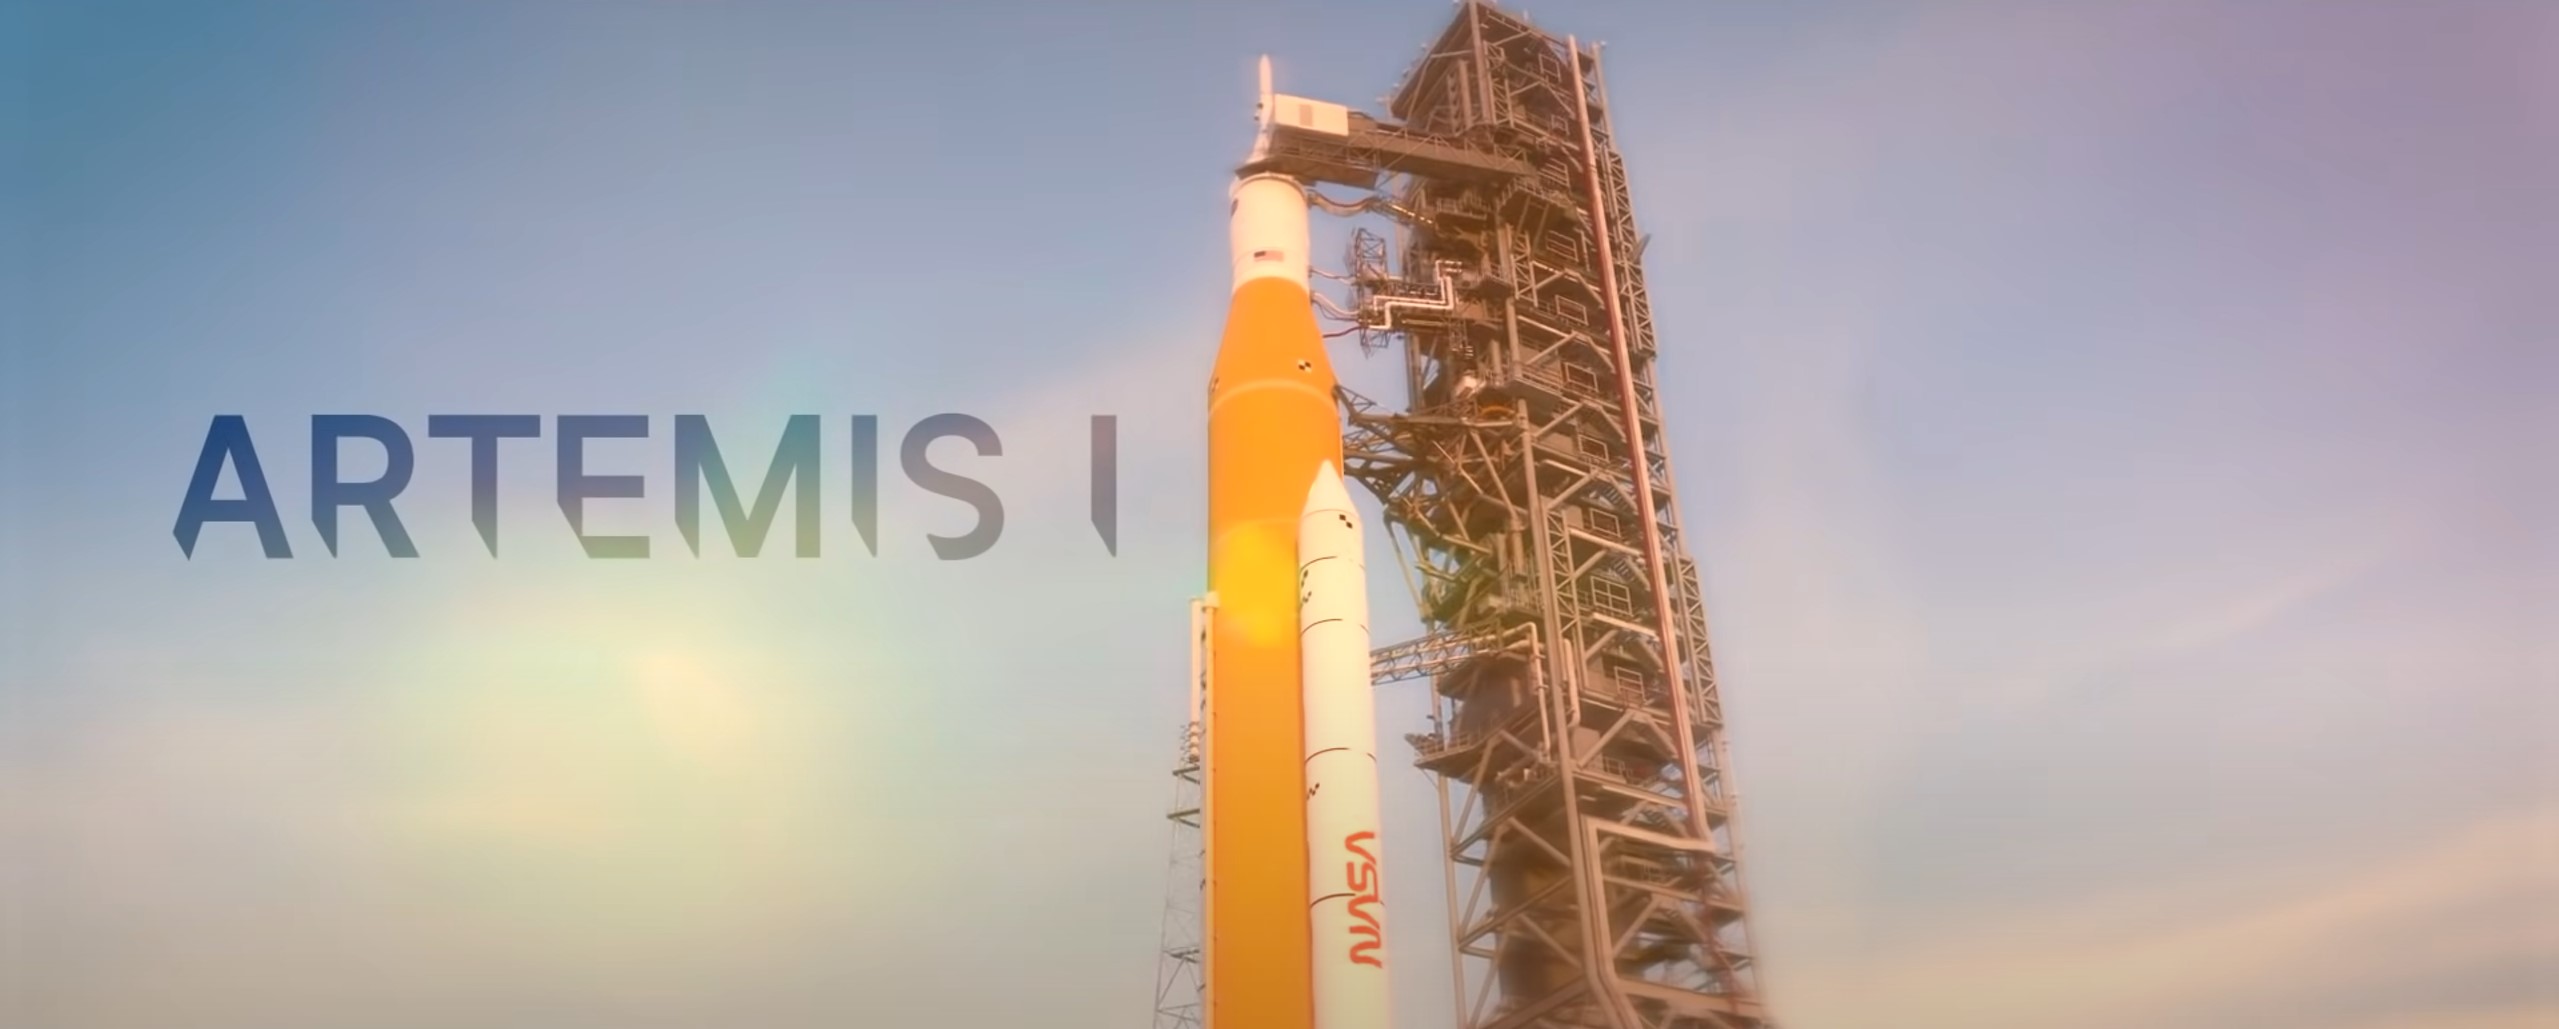 Problemy z Artemis 1 rozwiązane. Kiedy start misji?